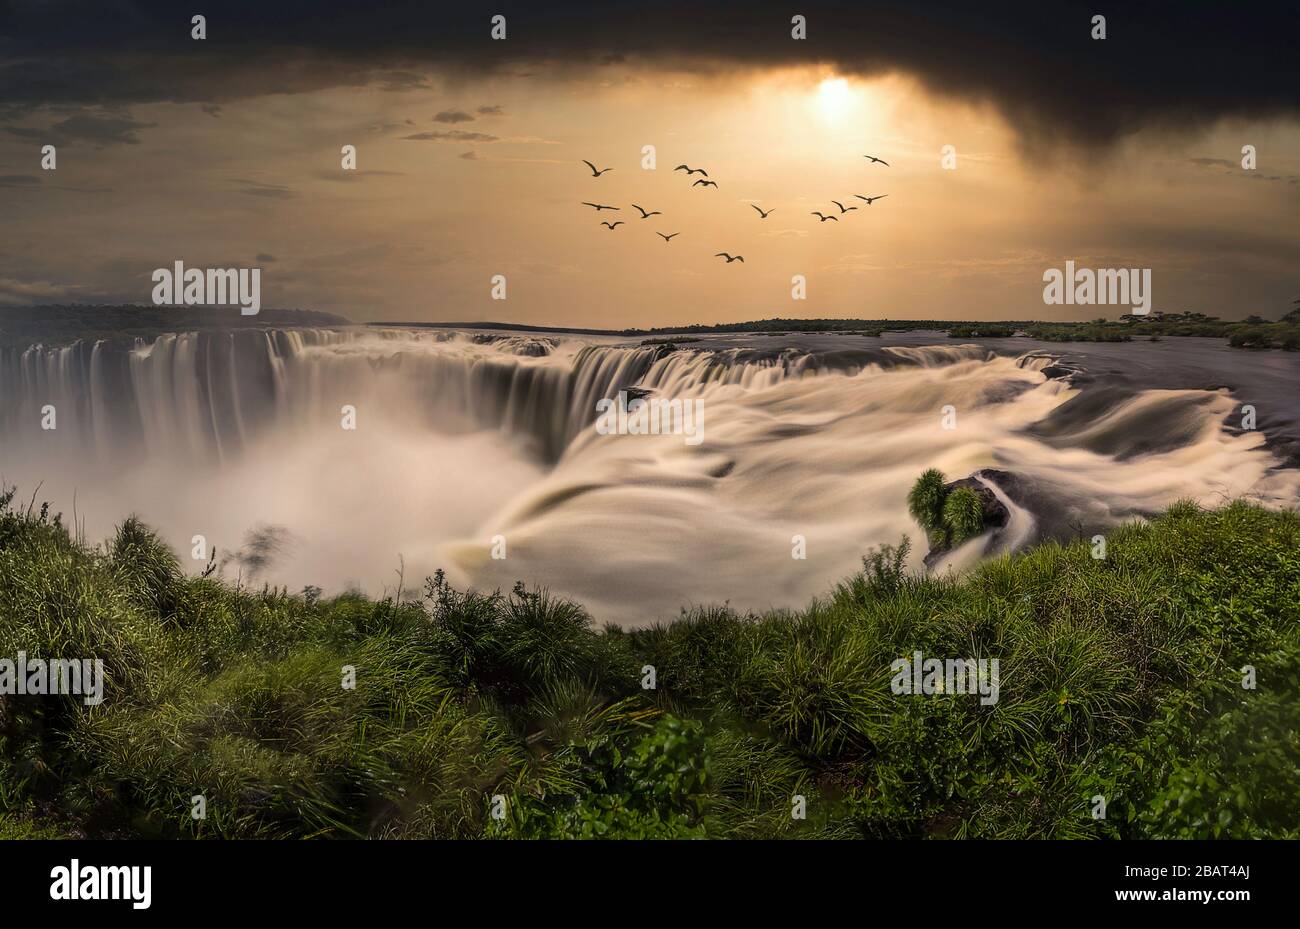 Dreamlike view of Iguazu Falls at sunset Stock Photo